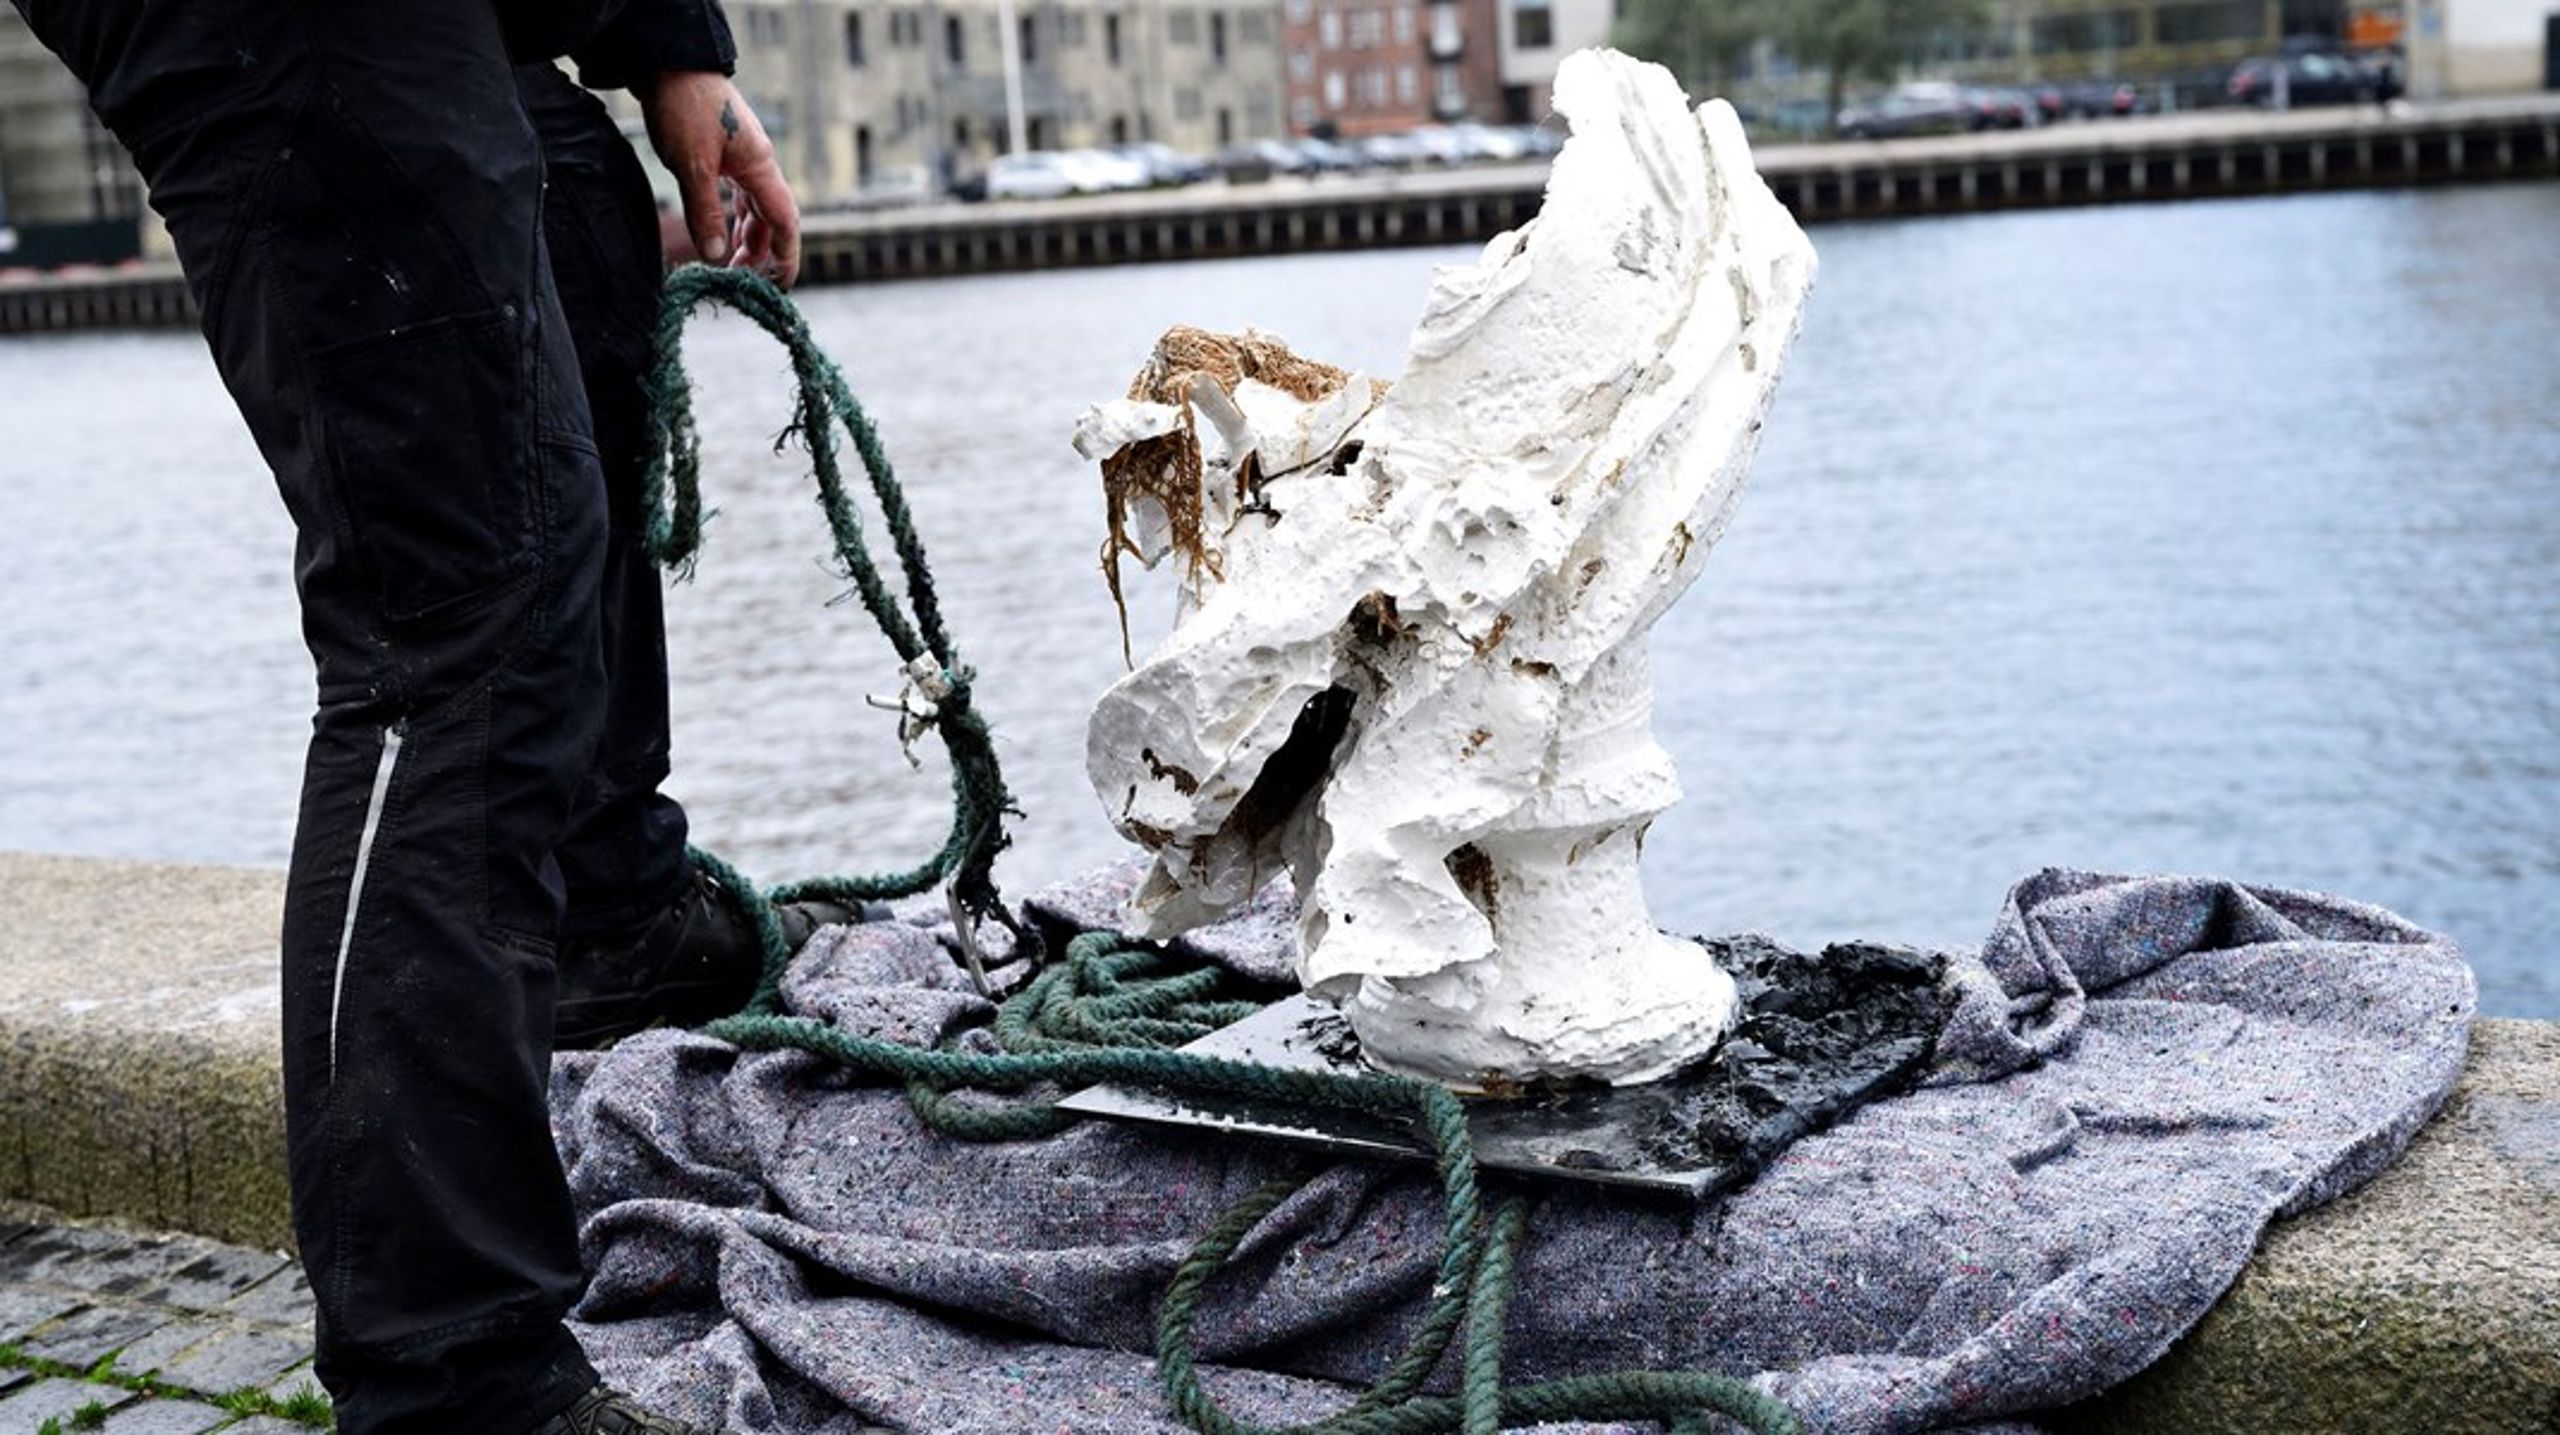 Det var en buste af kong Frederik V, stifter af Kunstakademiet, som blev smidt i havnen af en nu bortvist institutleder for at sætte gang i en debat om Danmarks fortid som kolonimagt.